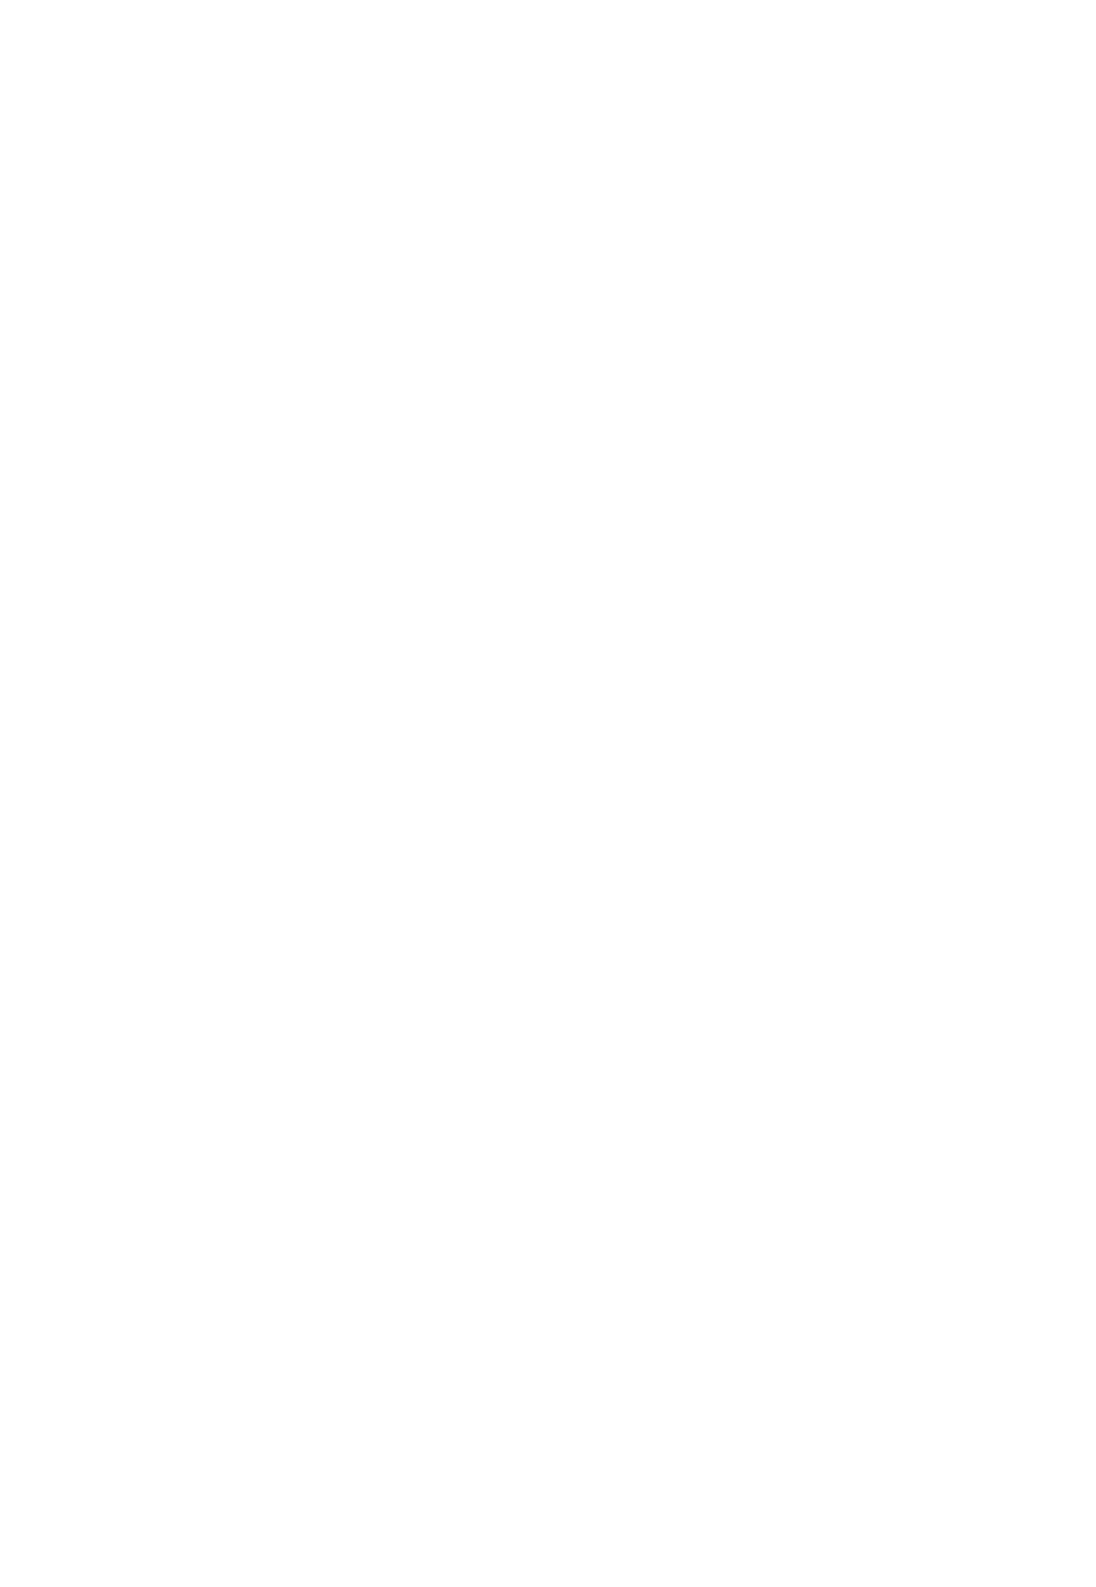 Sight Sciences logo for dark backgrounds (transparent PNG)